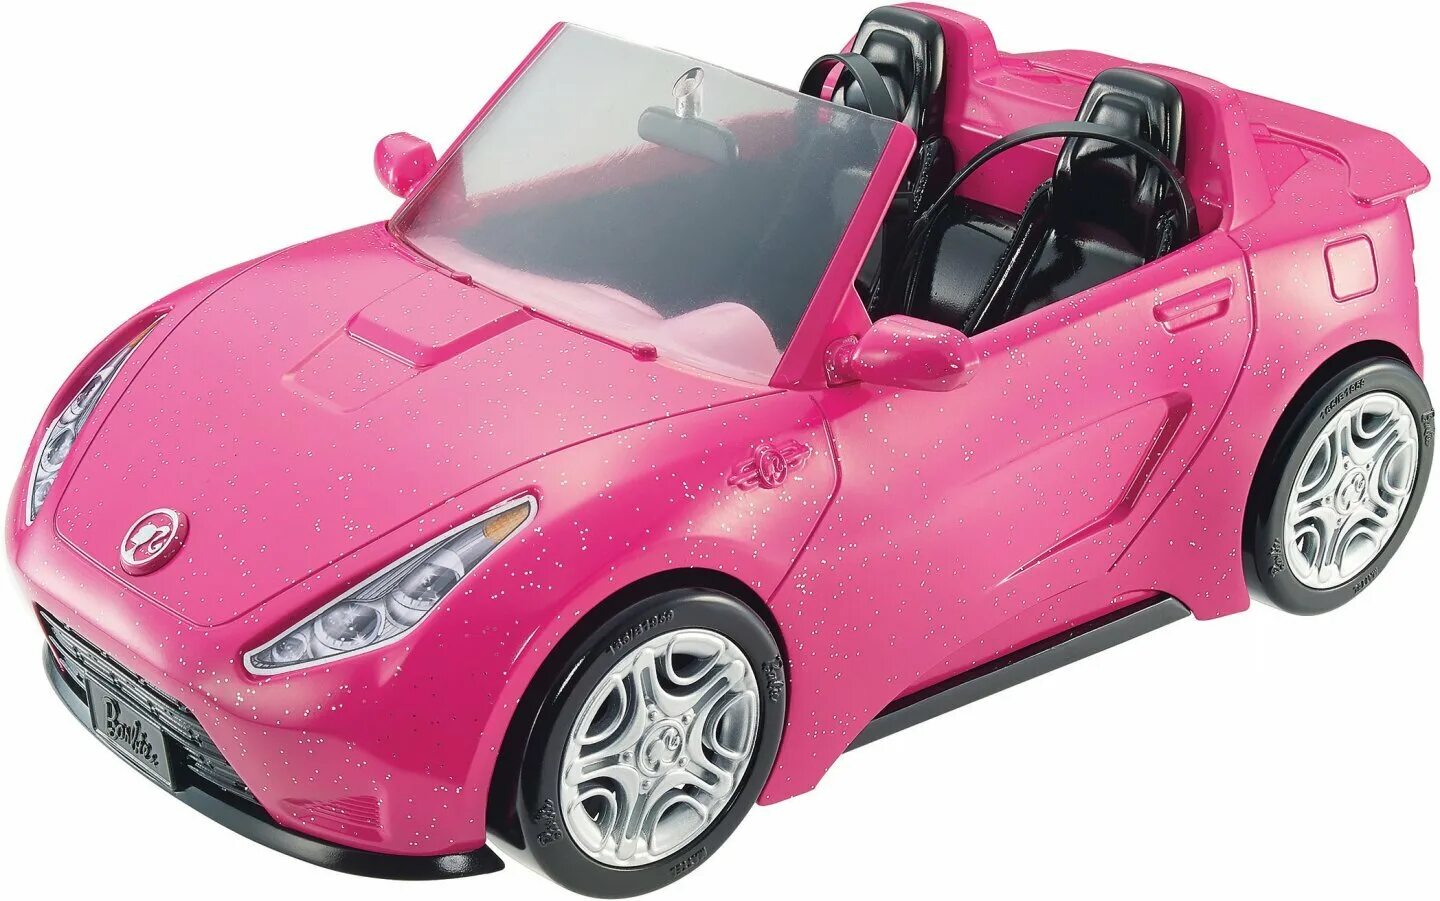 Кабриолет Barbie dvx59. Набор Barbie гламурный кабриолет, djr55. Машина кабриолет Barbie на радиоуправлении 63619. Машинка радиоуправляемая Nikko для Барби Corvette.